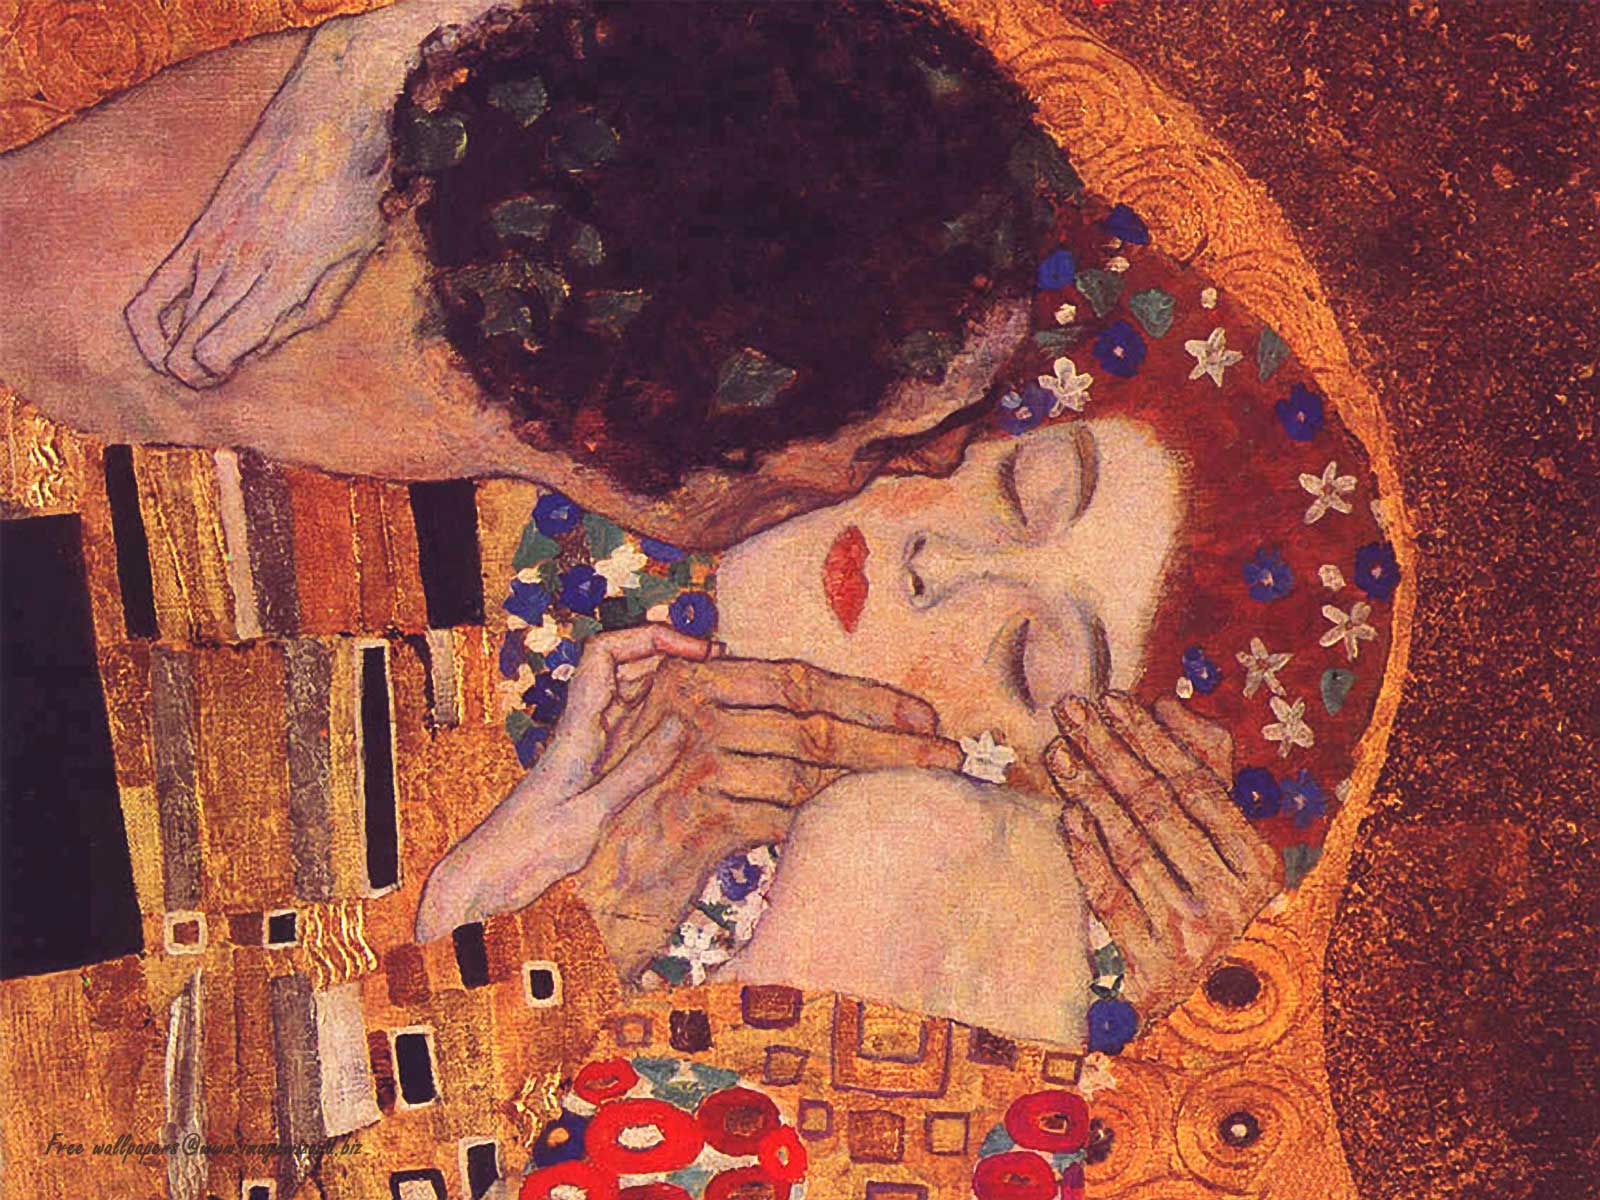 Wallpaper Gustav Klimt The Kiss. starfruit flavor tasters